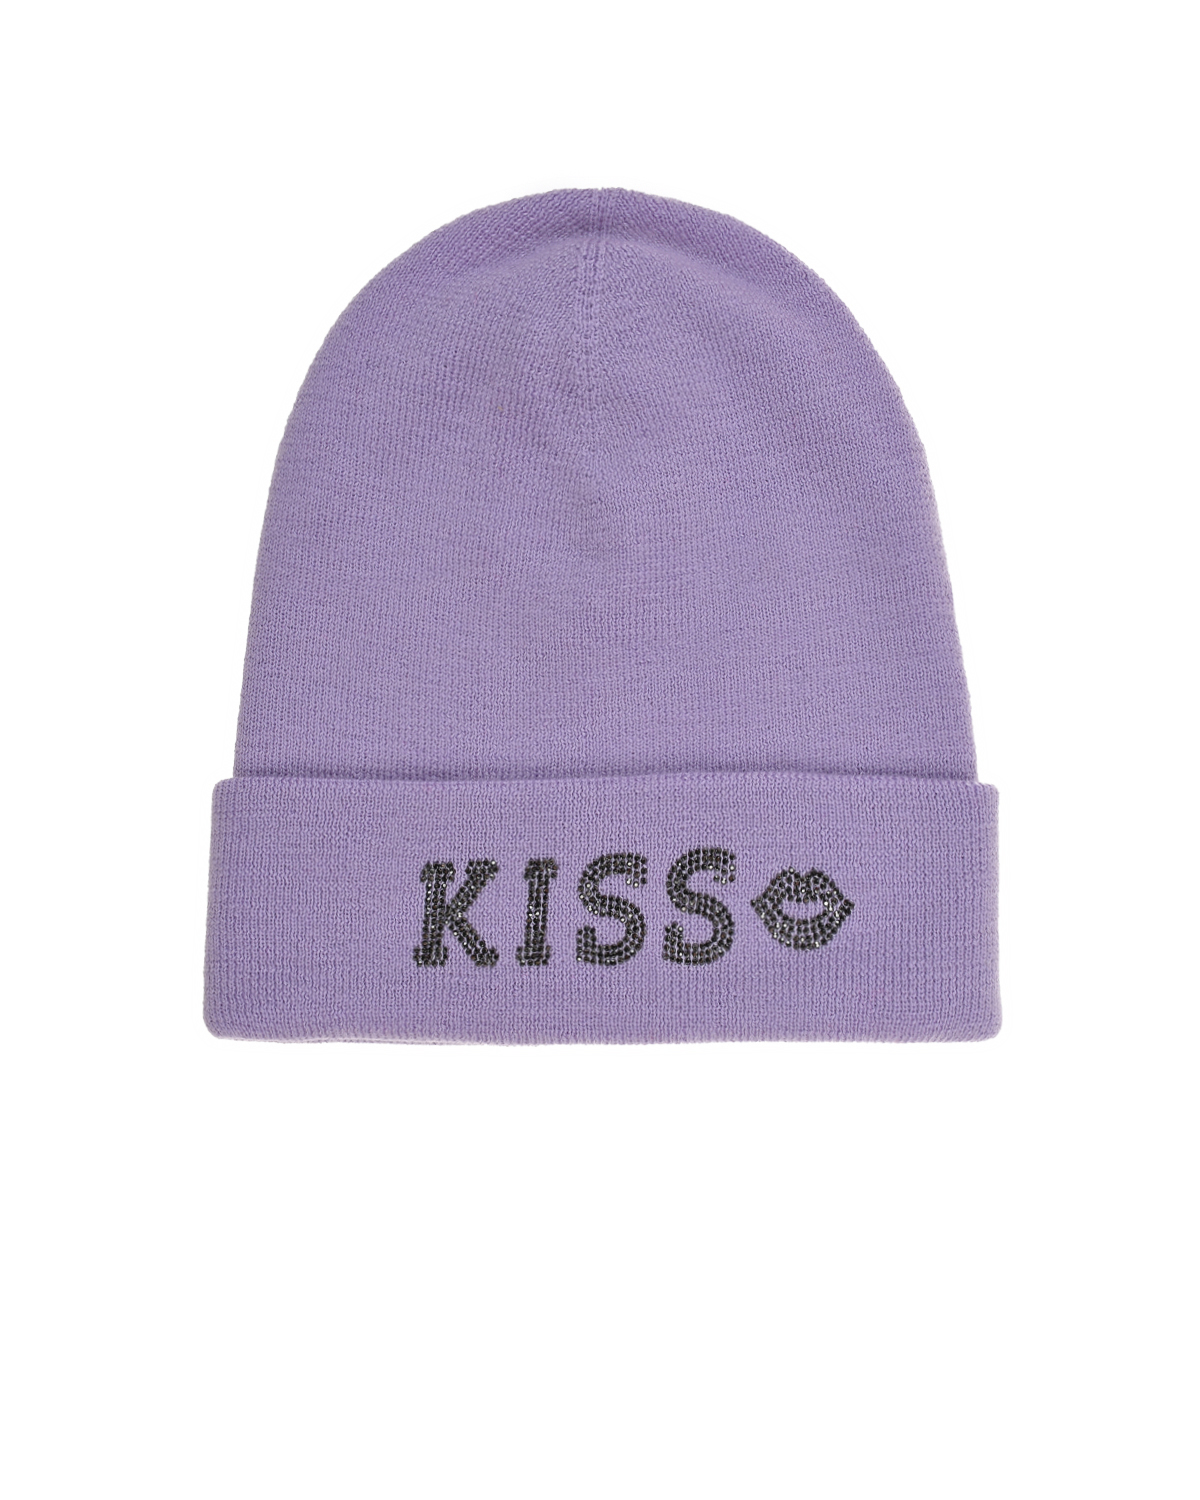 Лиловая шапка с надписью "Kiss" Regina детская